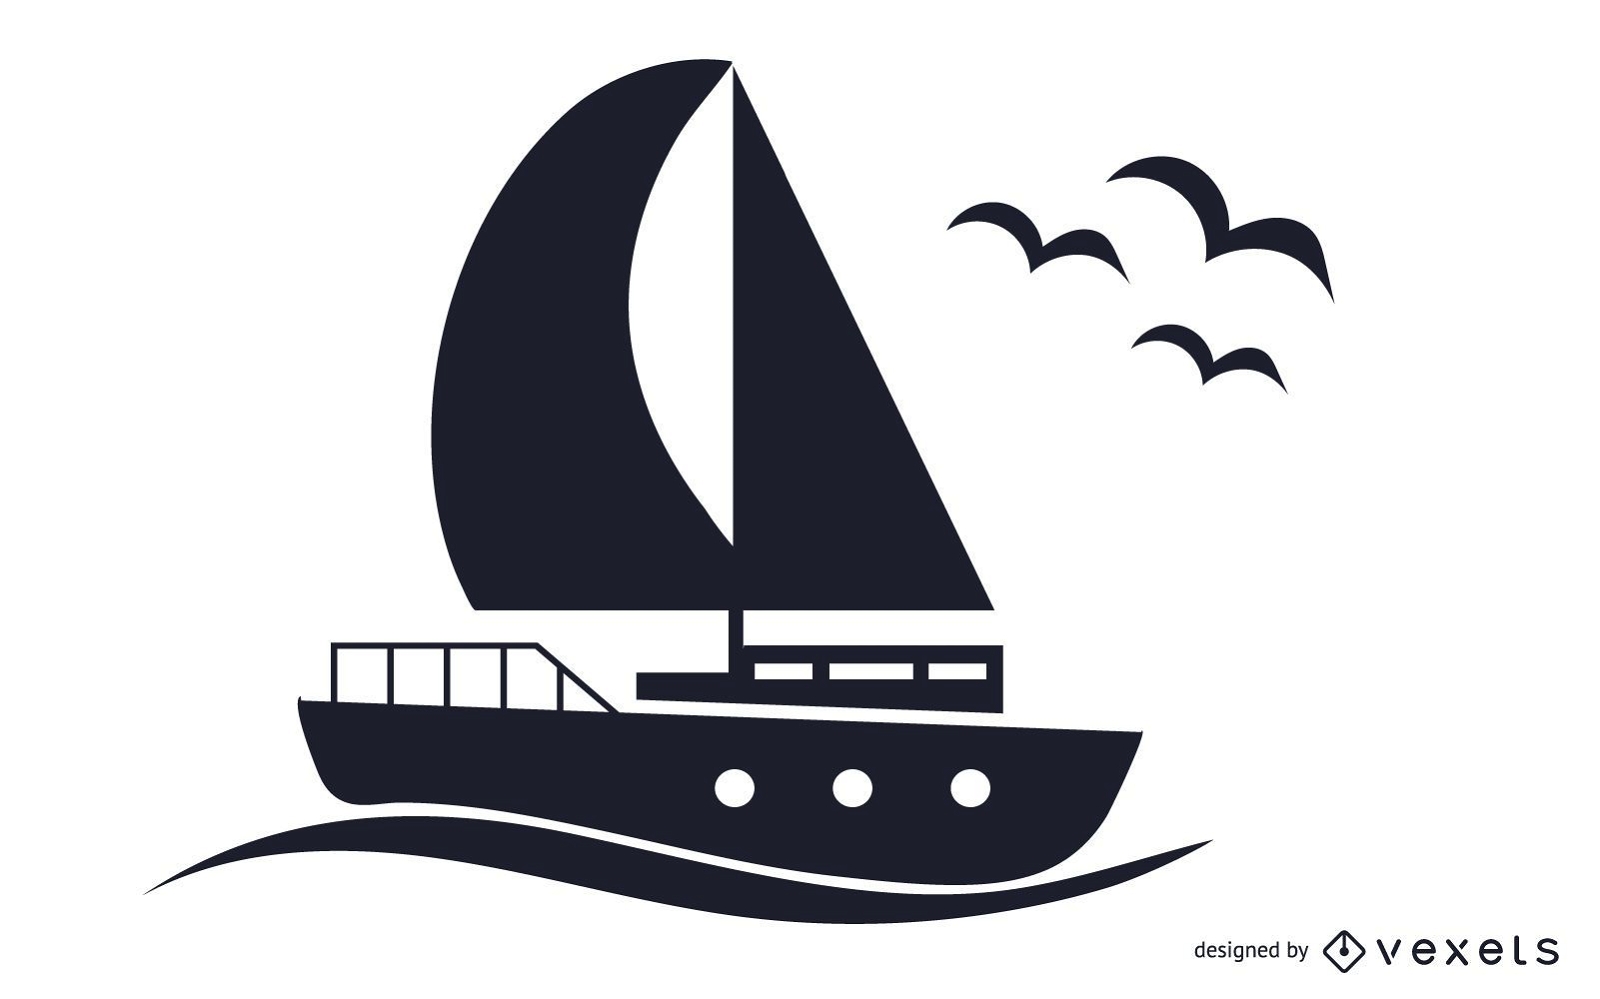 Ilustração em preto e branco do barco